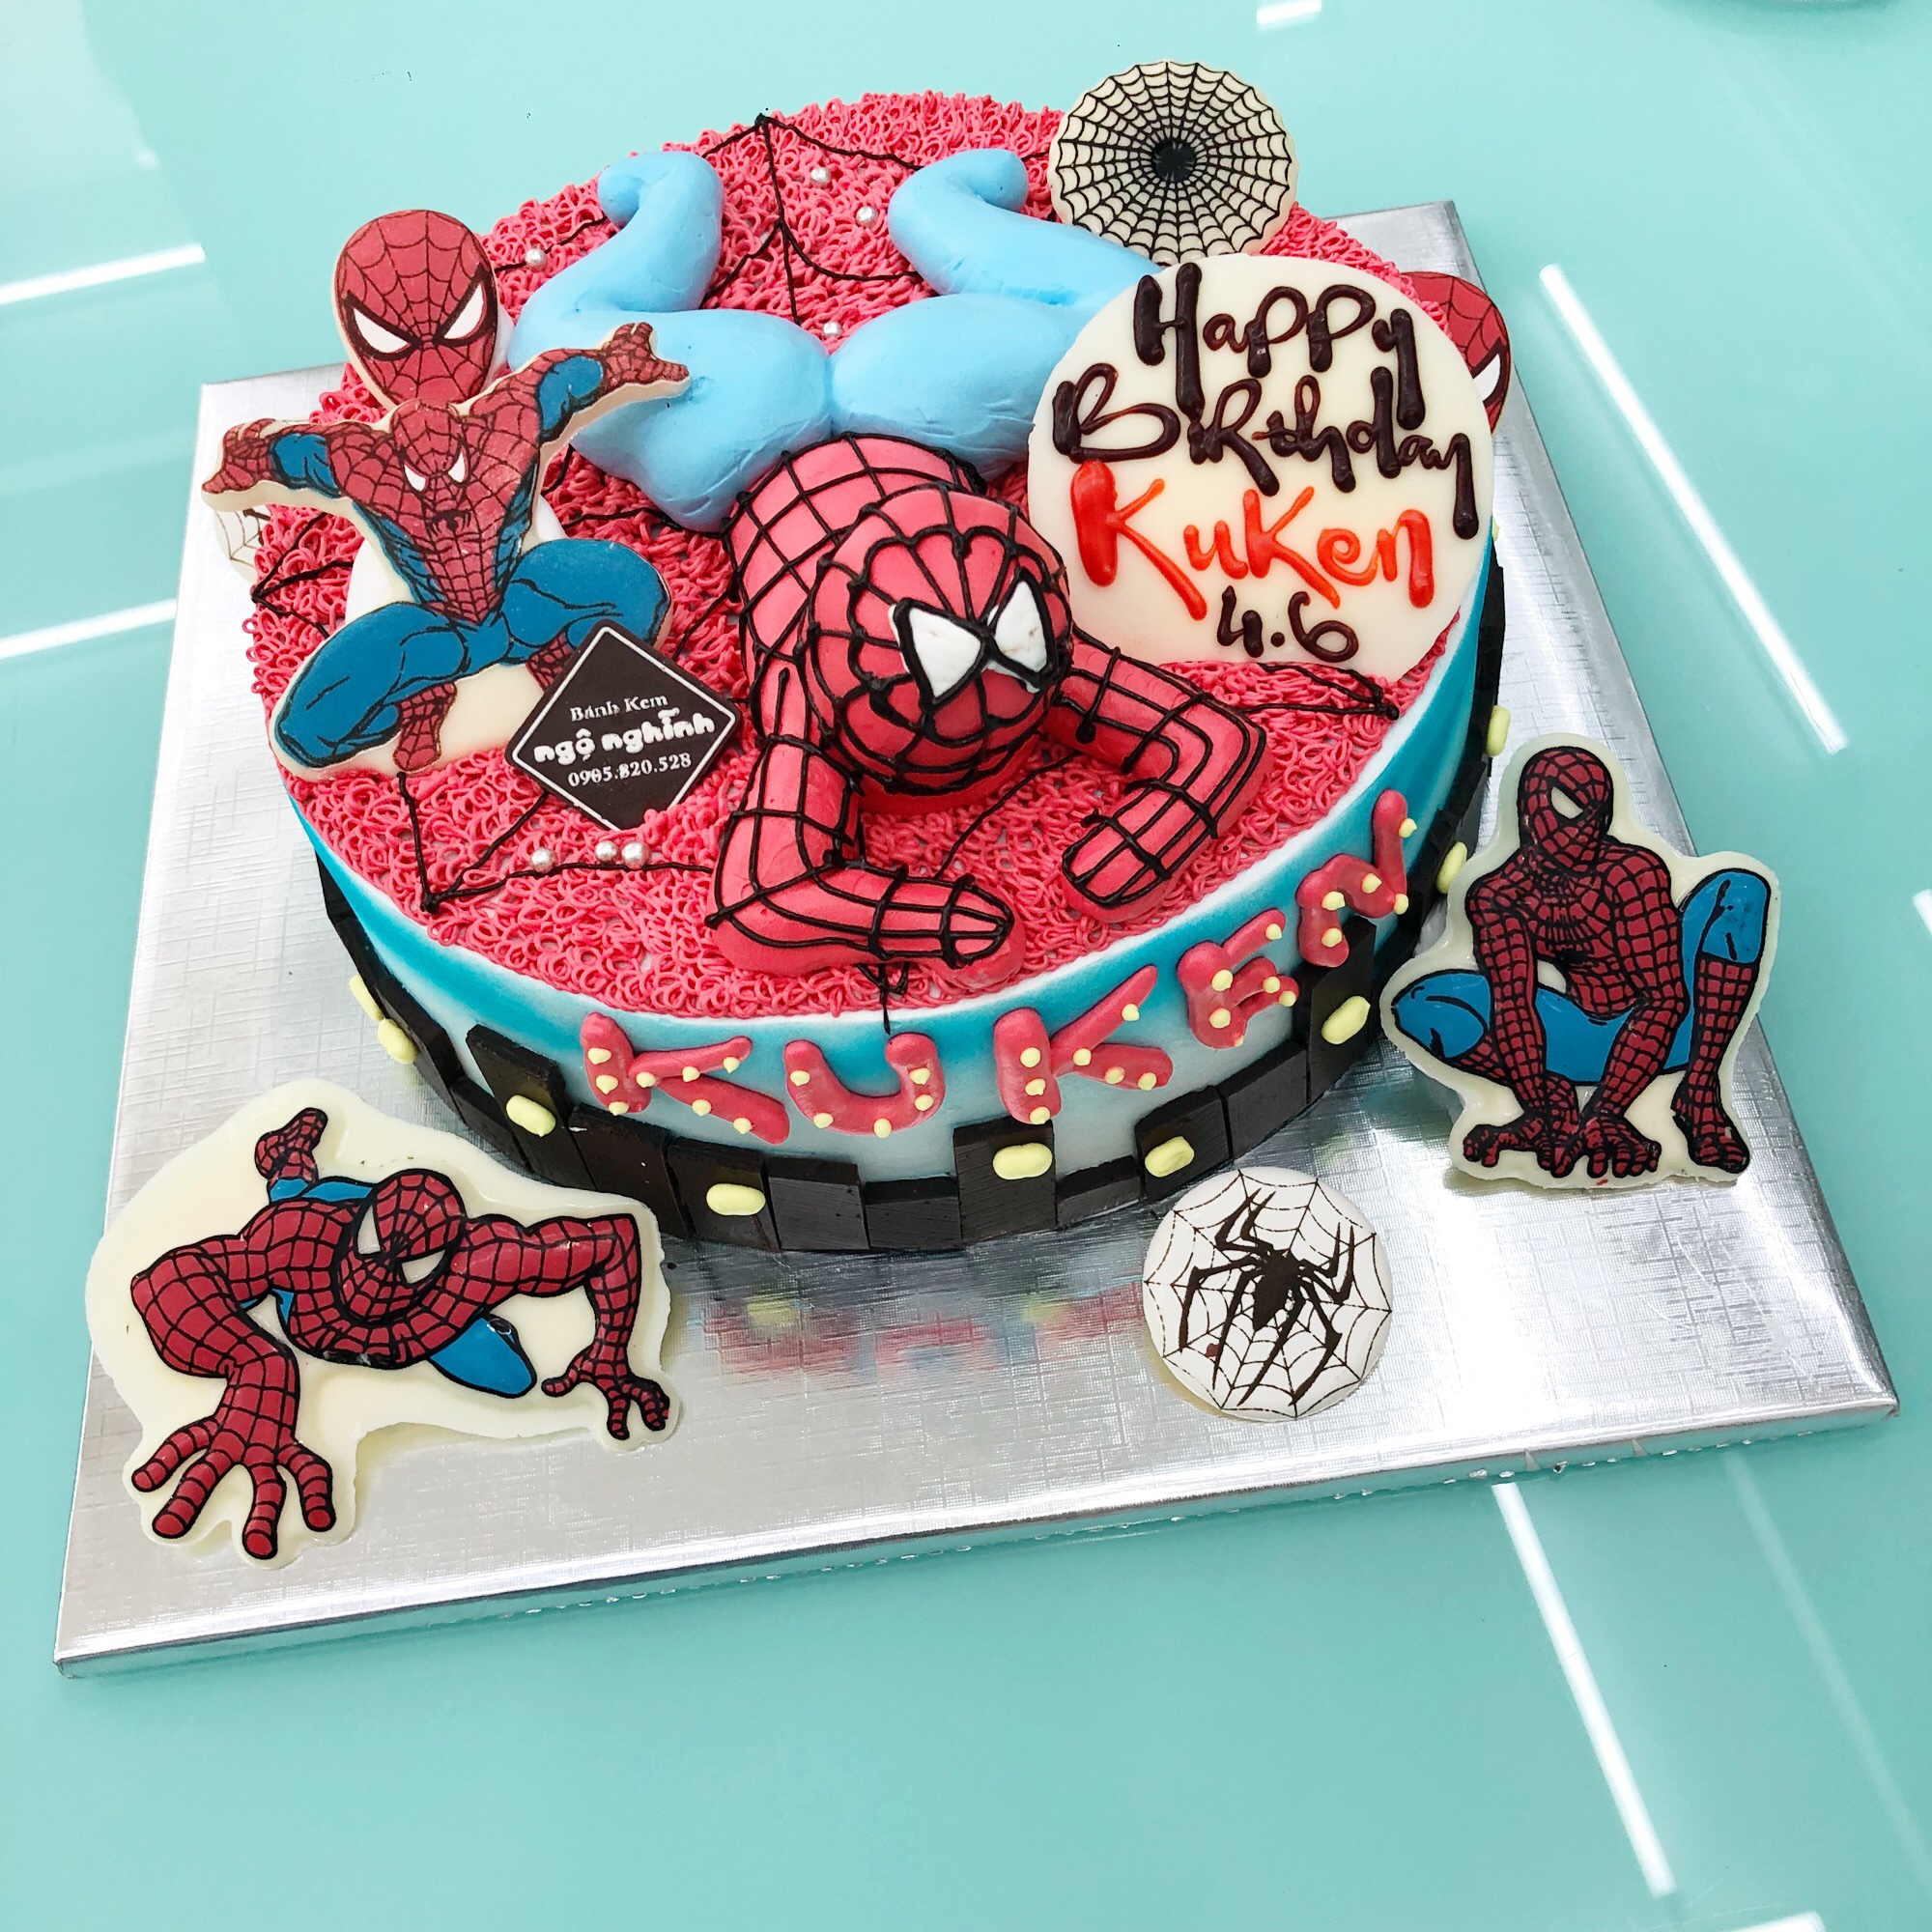 Sắp đến sinh nhật bạn và bạn đang cần một chiếc bánh sinh nhật độc đáo? Hãy thử với hình ảnh tạo hình người nhện, icon độc đáo và đầy tính sáng tạo. Bạn sẽ thực sự cảm thấy hài lòng và thỏa mãn với chiếc bánh sinh nhật thú vị này.